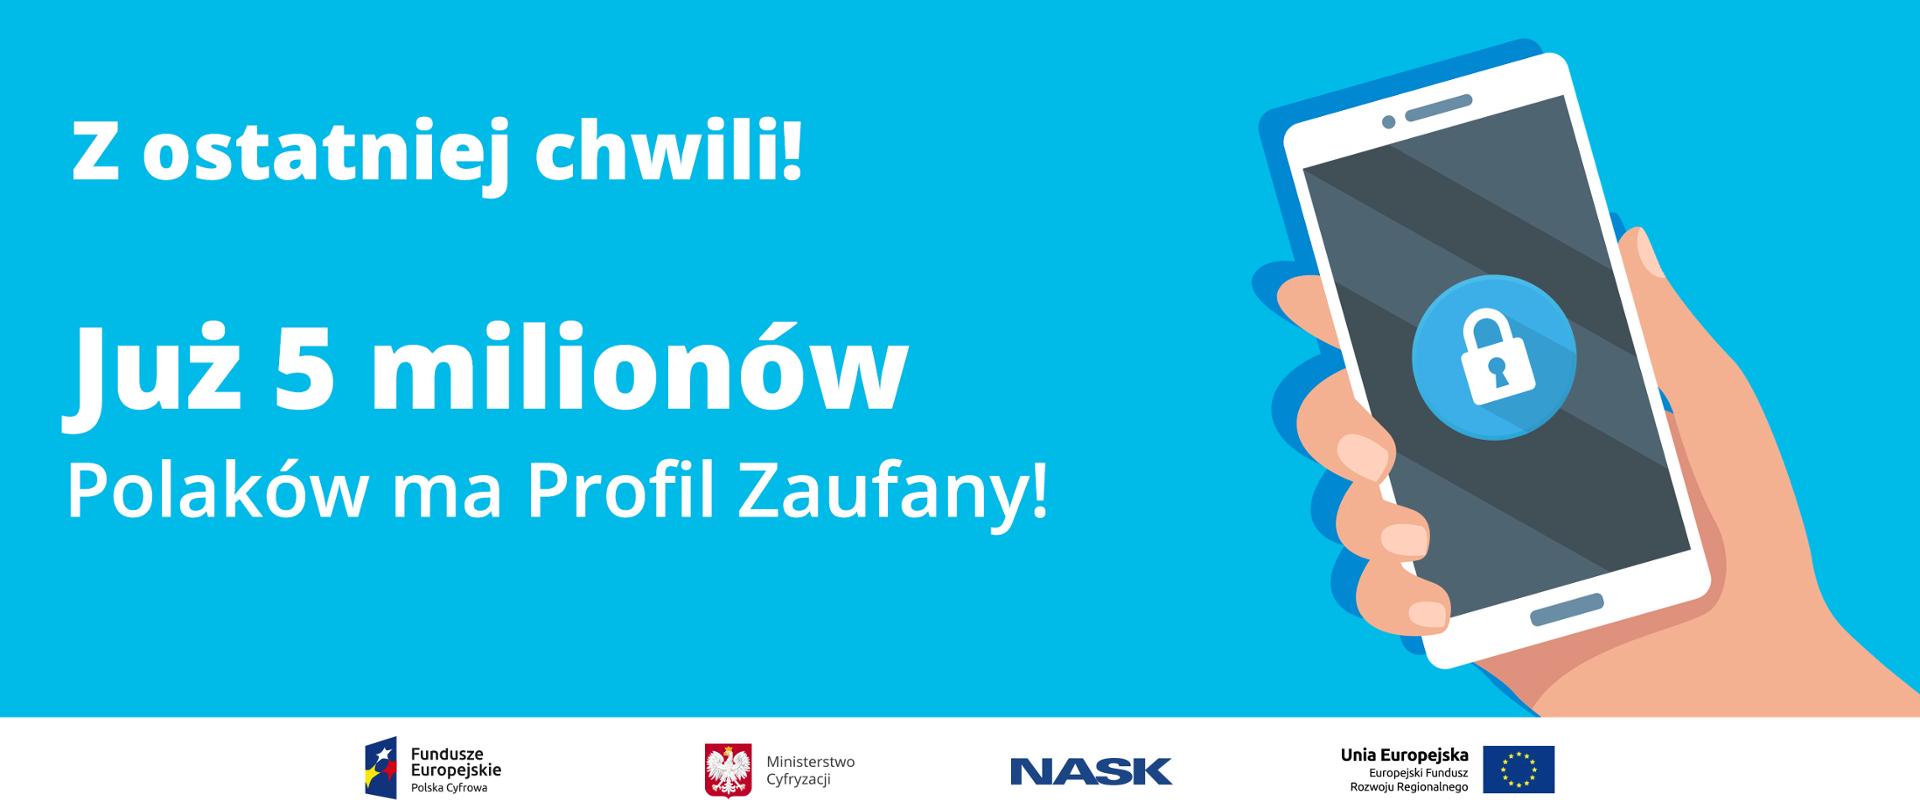 Niebieskie tło. Napis: Z ostatniej chwili! Już 5 milionów Polaków ma Profil Zaufany! Obok ręka trzymająca telefon, na ekranie symbol blokady - kłódka.